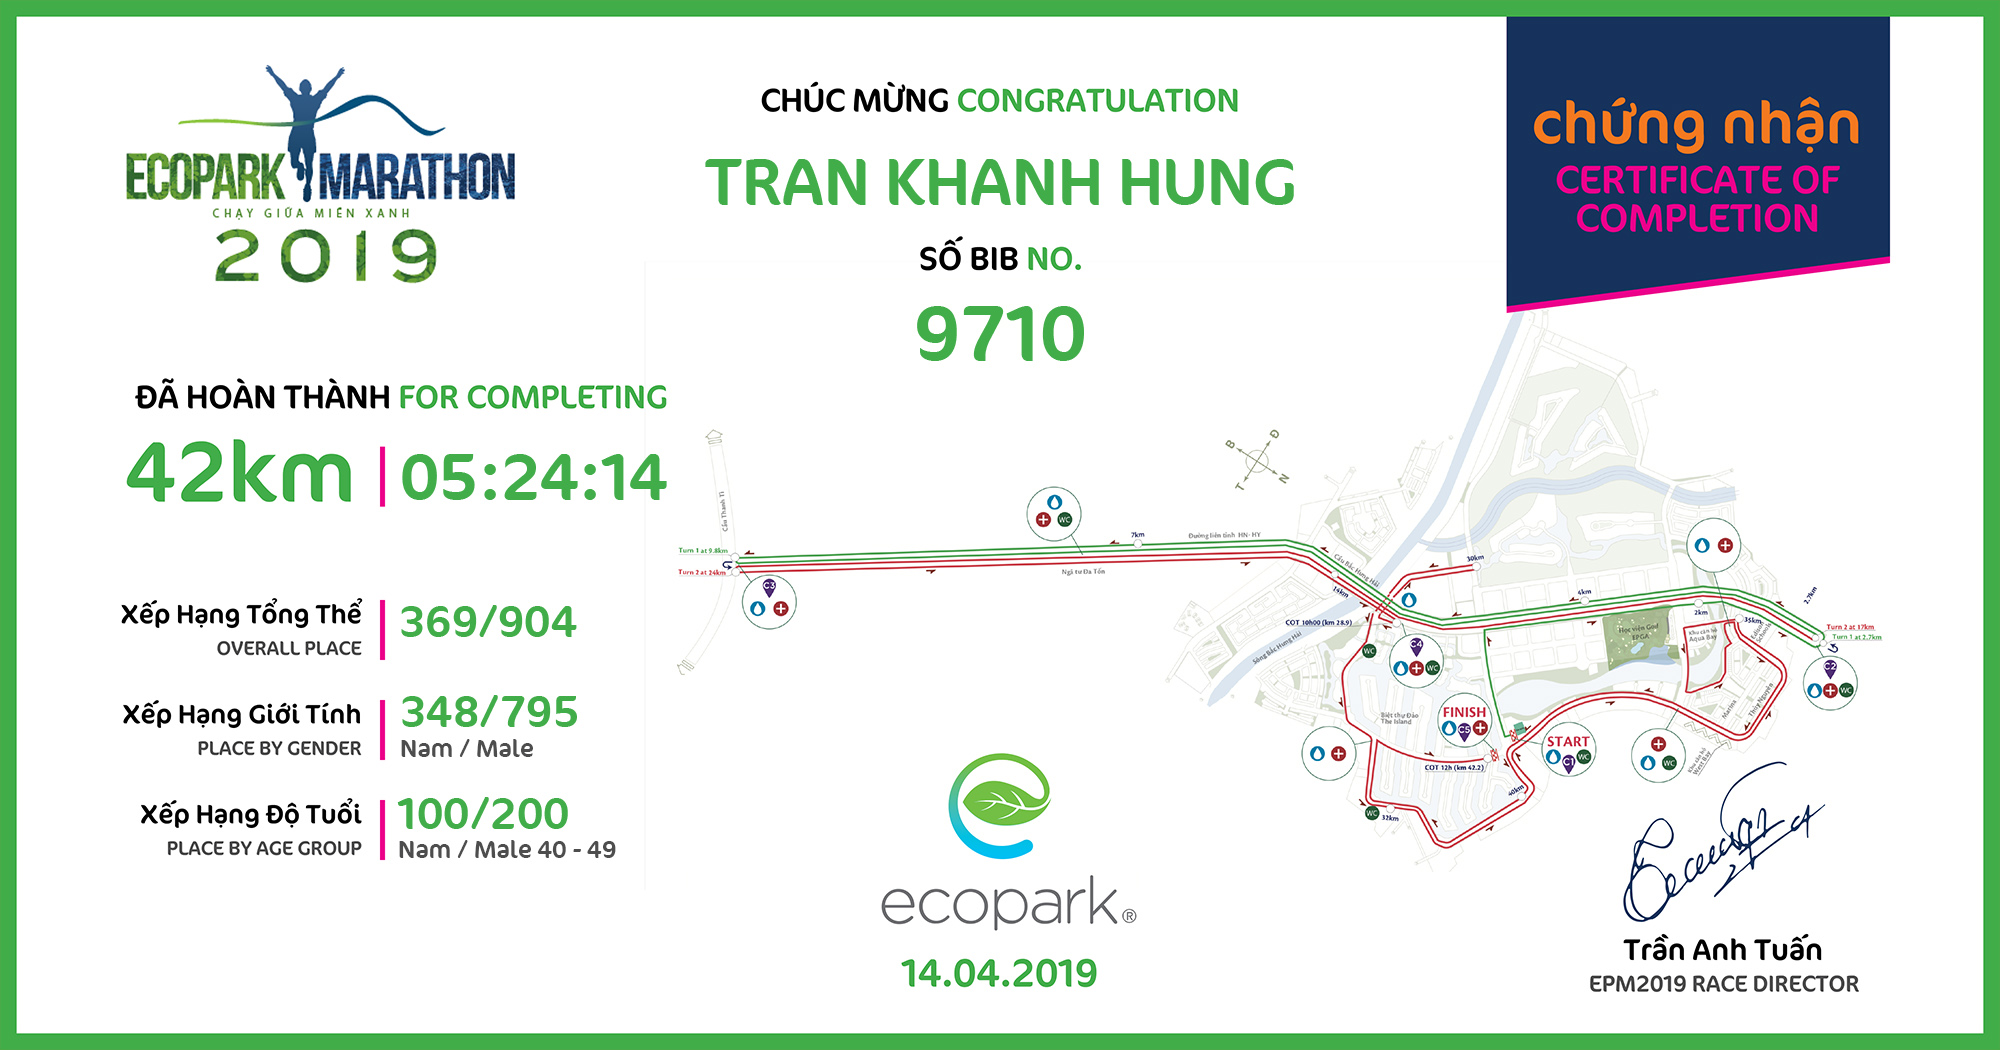 9710 - Tran Khanh Hung